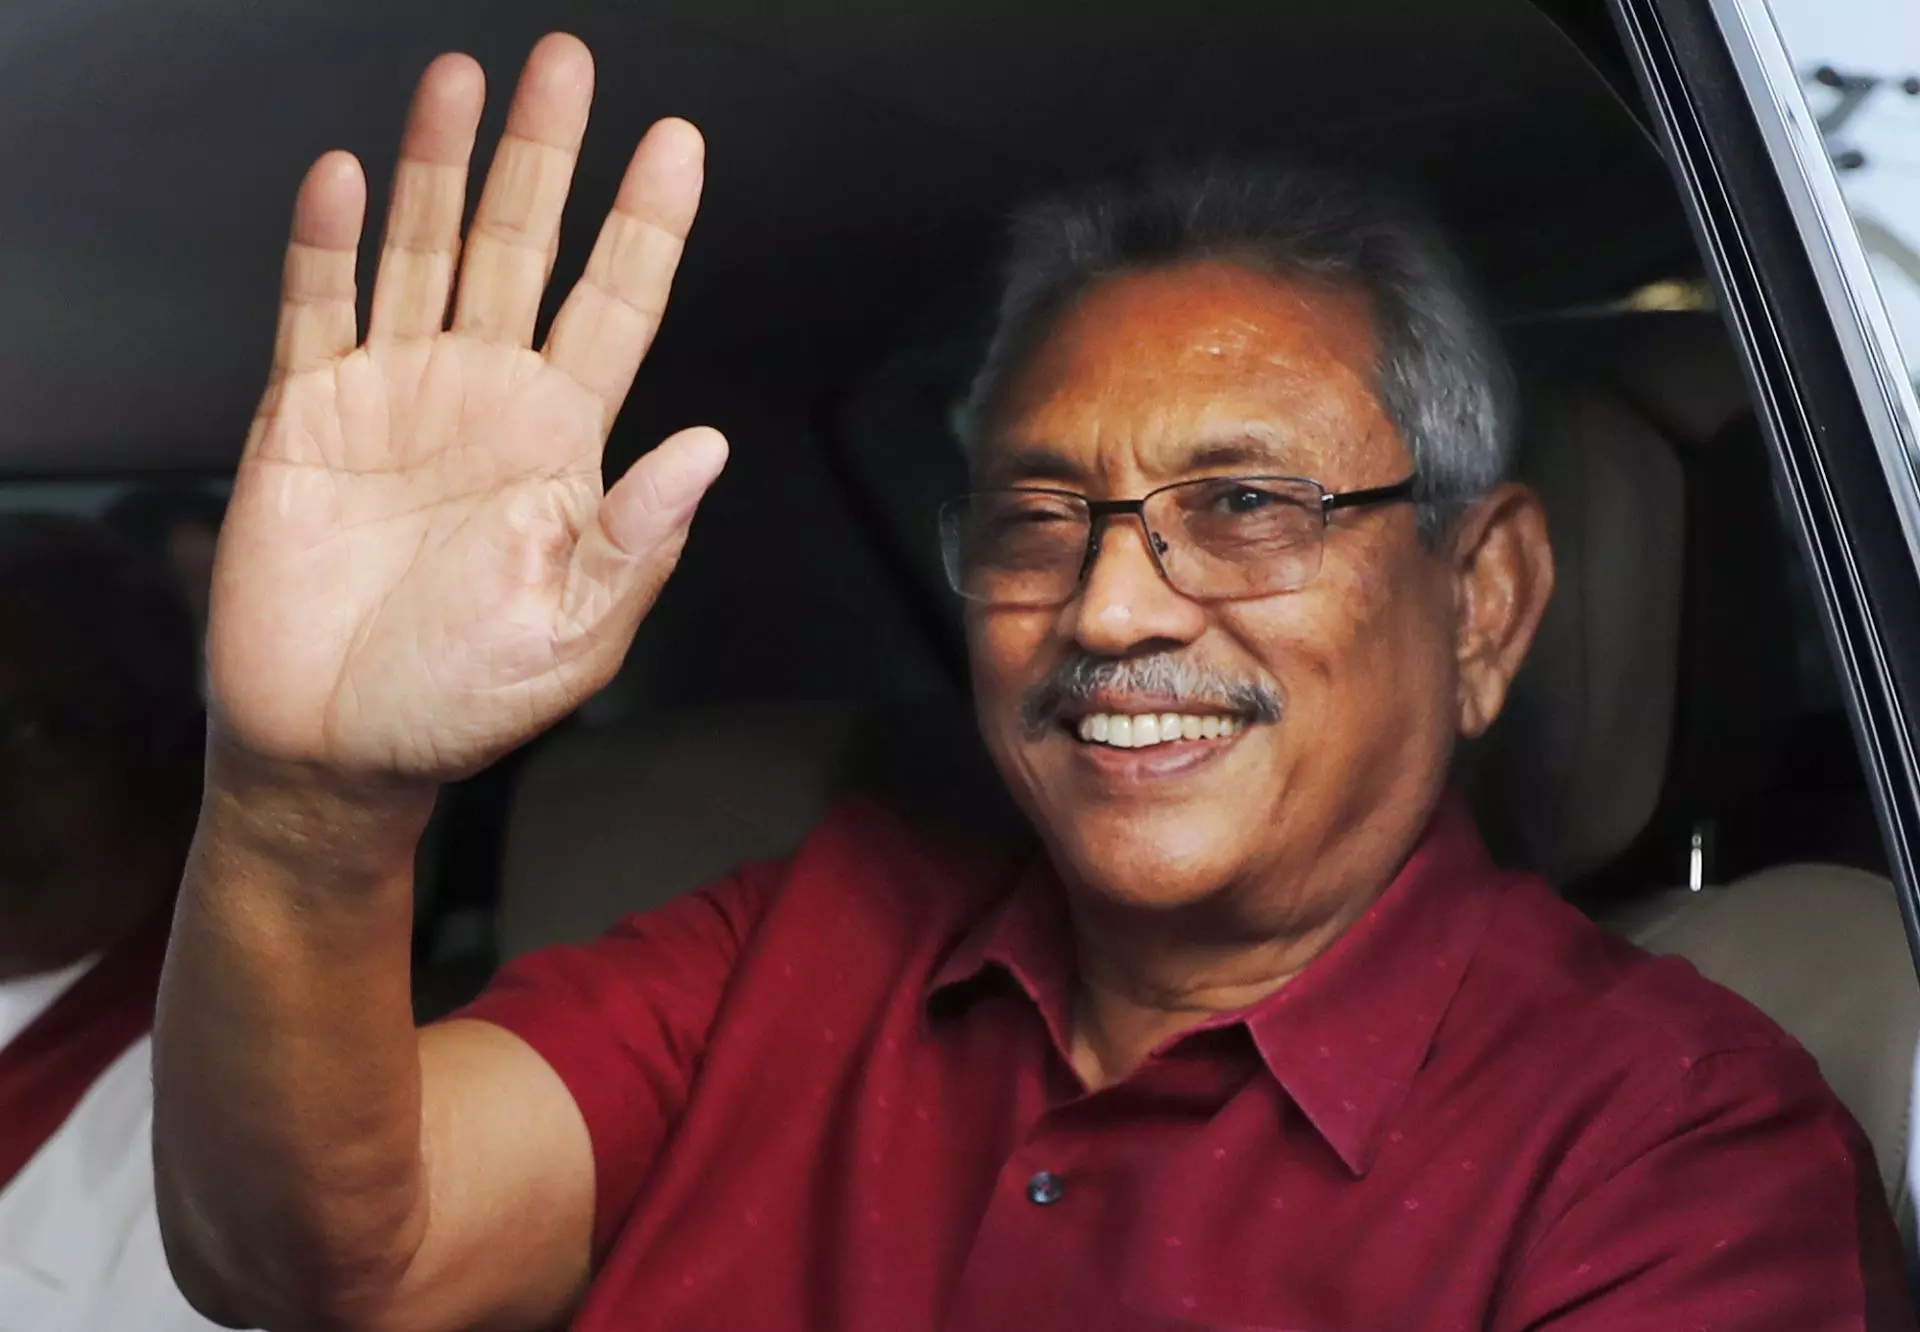 श्रीलंका : पूर्व रक्षा मंत्री गौतबाया राजपक्षे नए राष्ट्रपति चुने गए, सोमवार को शपथ लेंगे